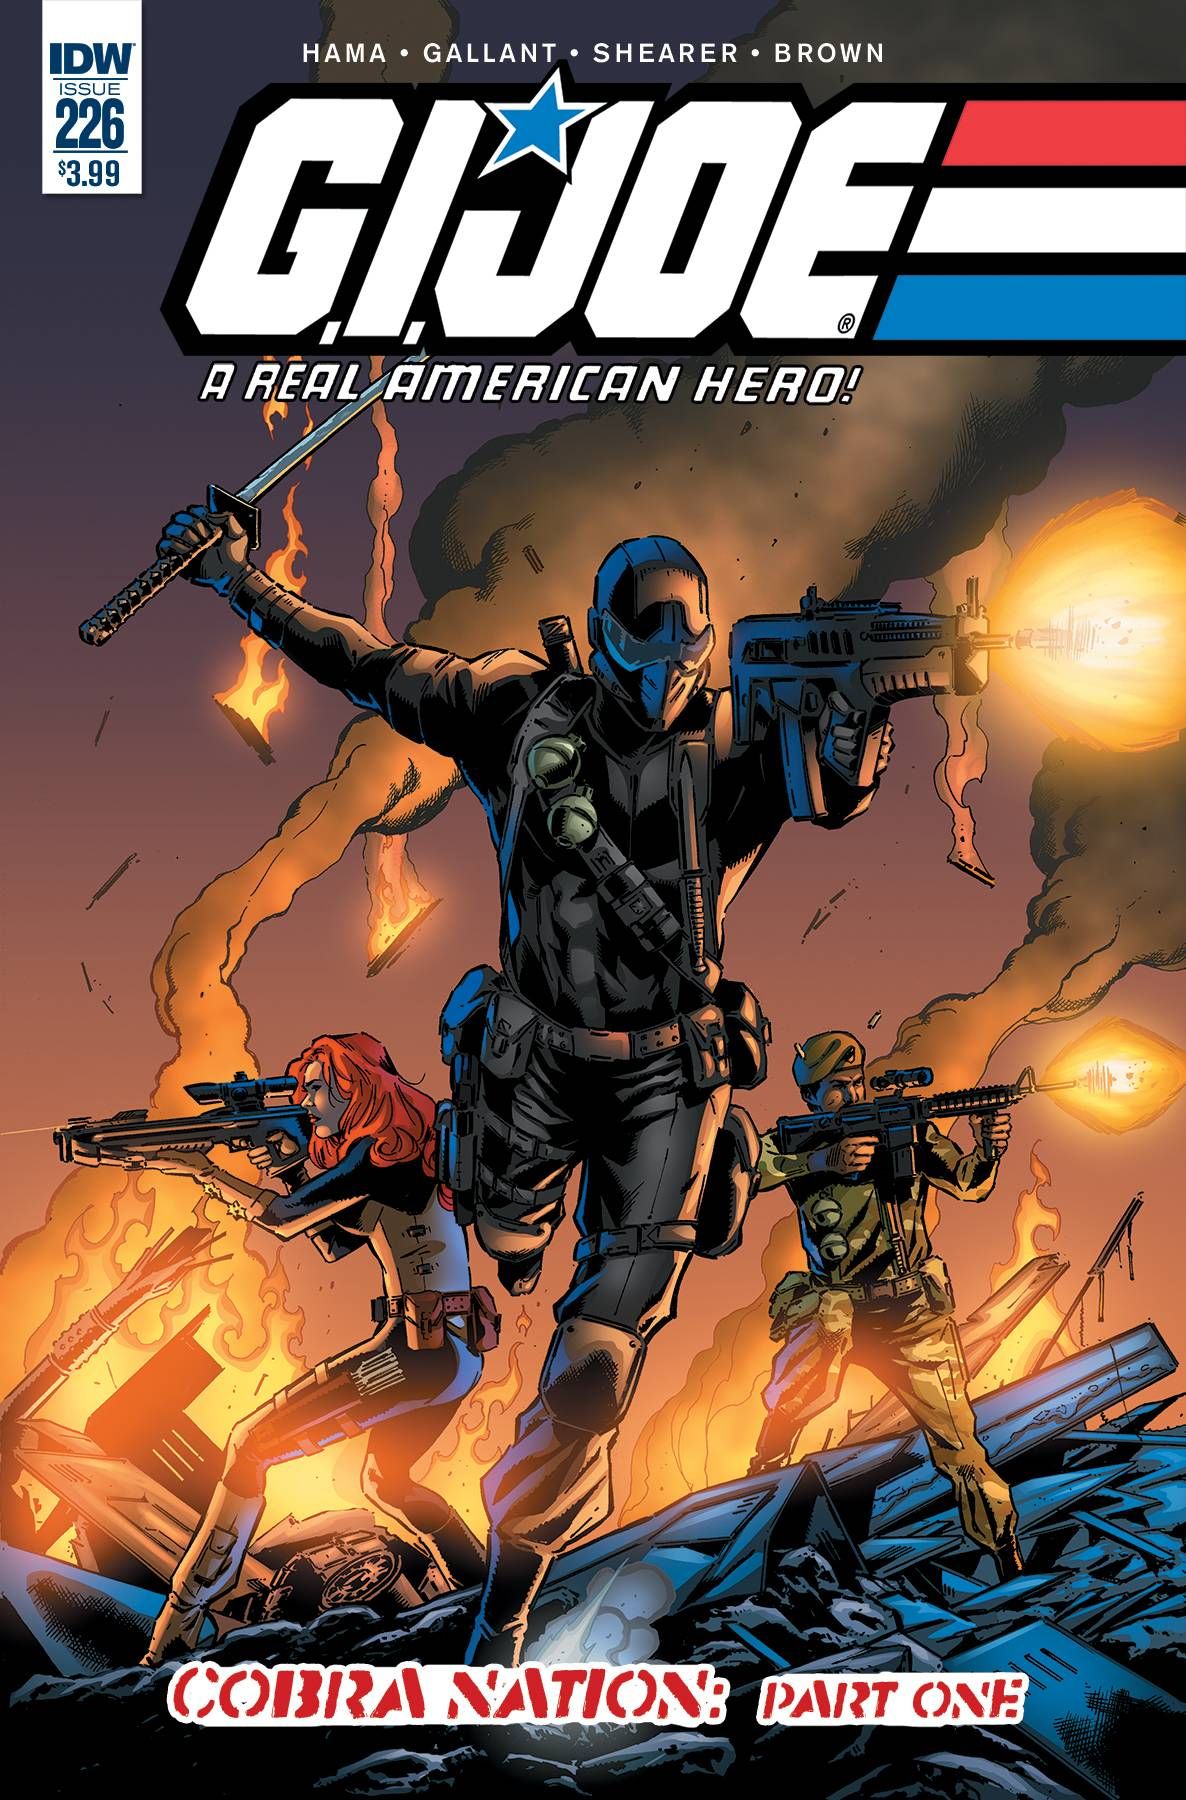 G.I. Joe: A Real American Hero #226 Comic